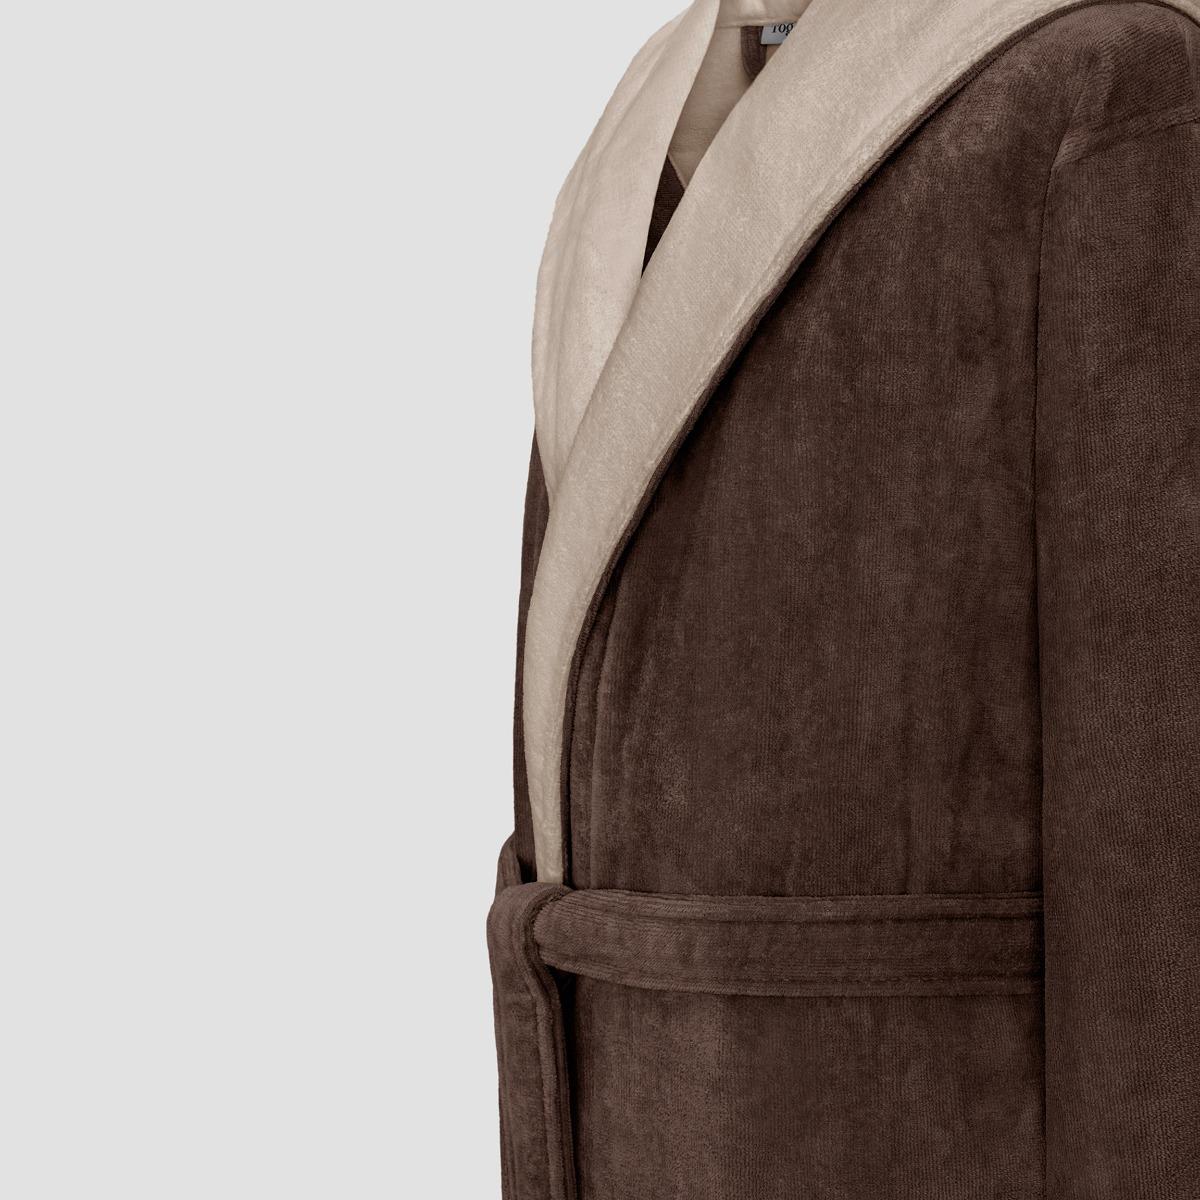 фото Халат togas арт лайн коричневый с бежевым xl(52)